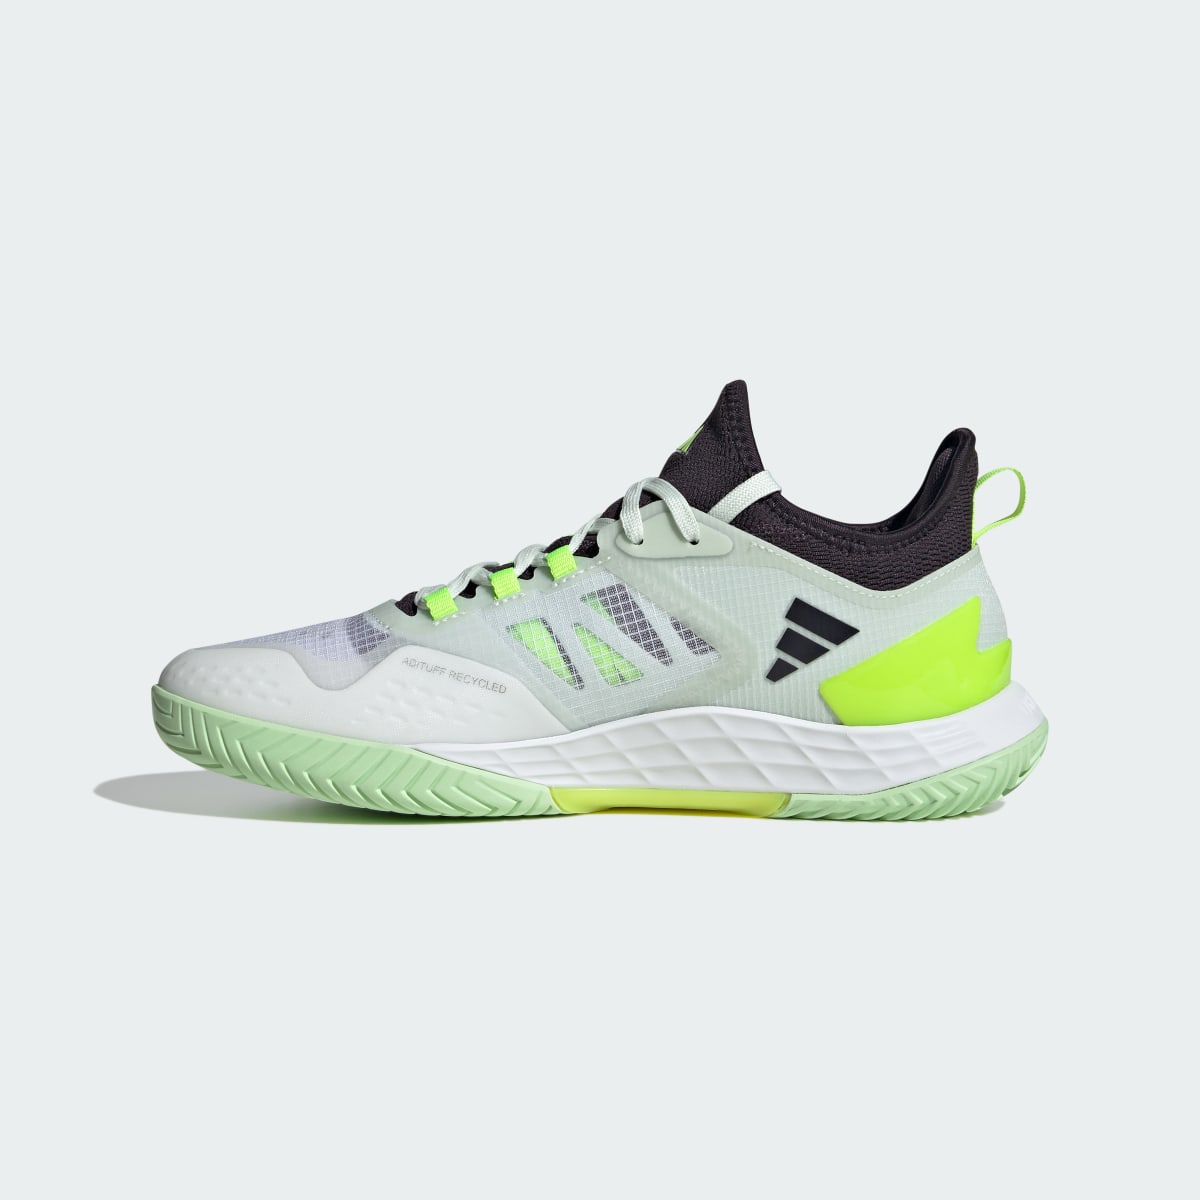 Adidas Adizero Ubersonic 4.1 Tennis Shoes. 10